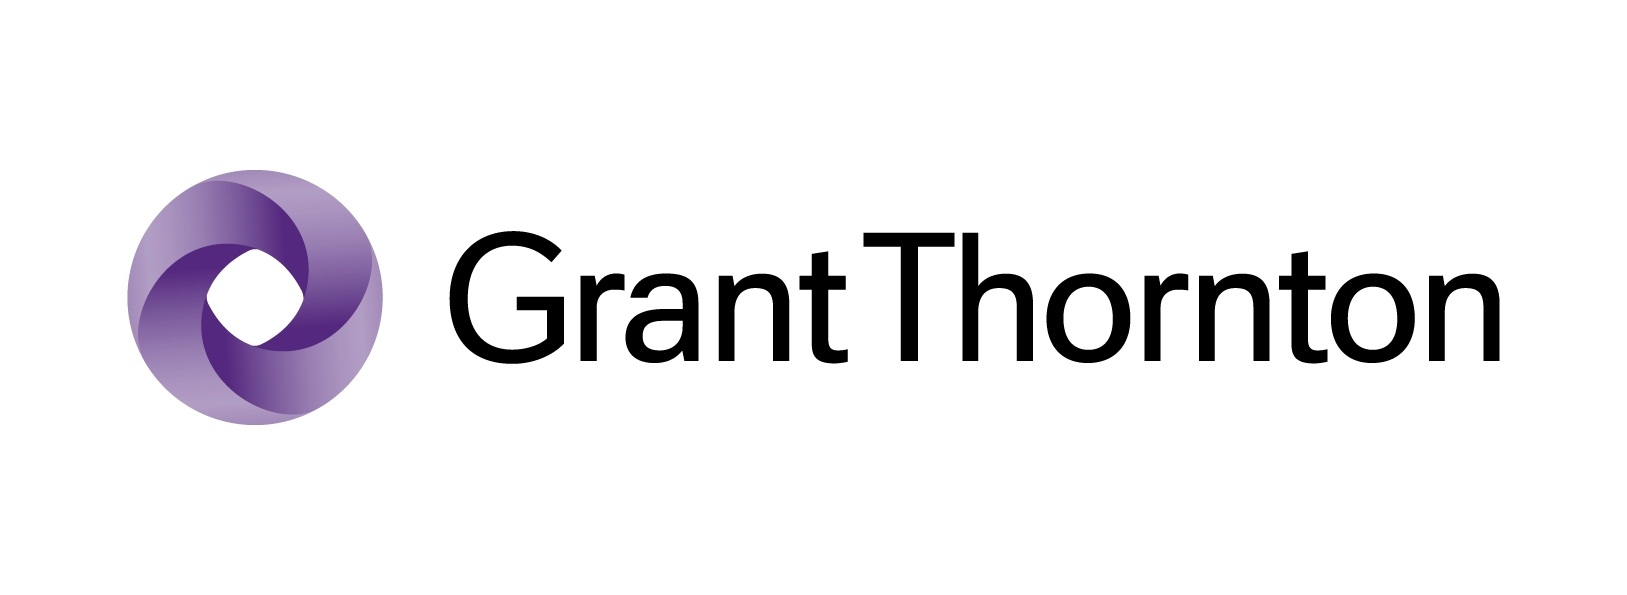 GrantThornton_logo